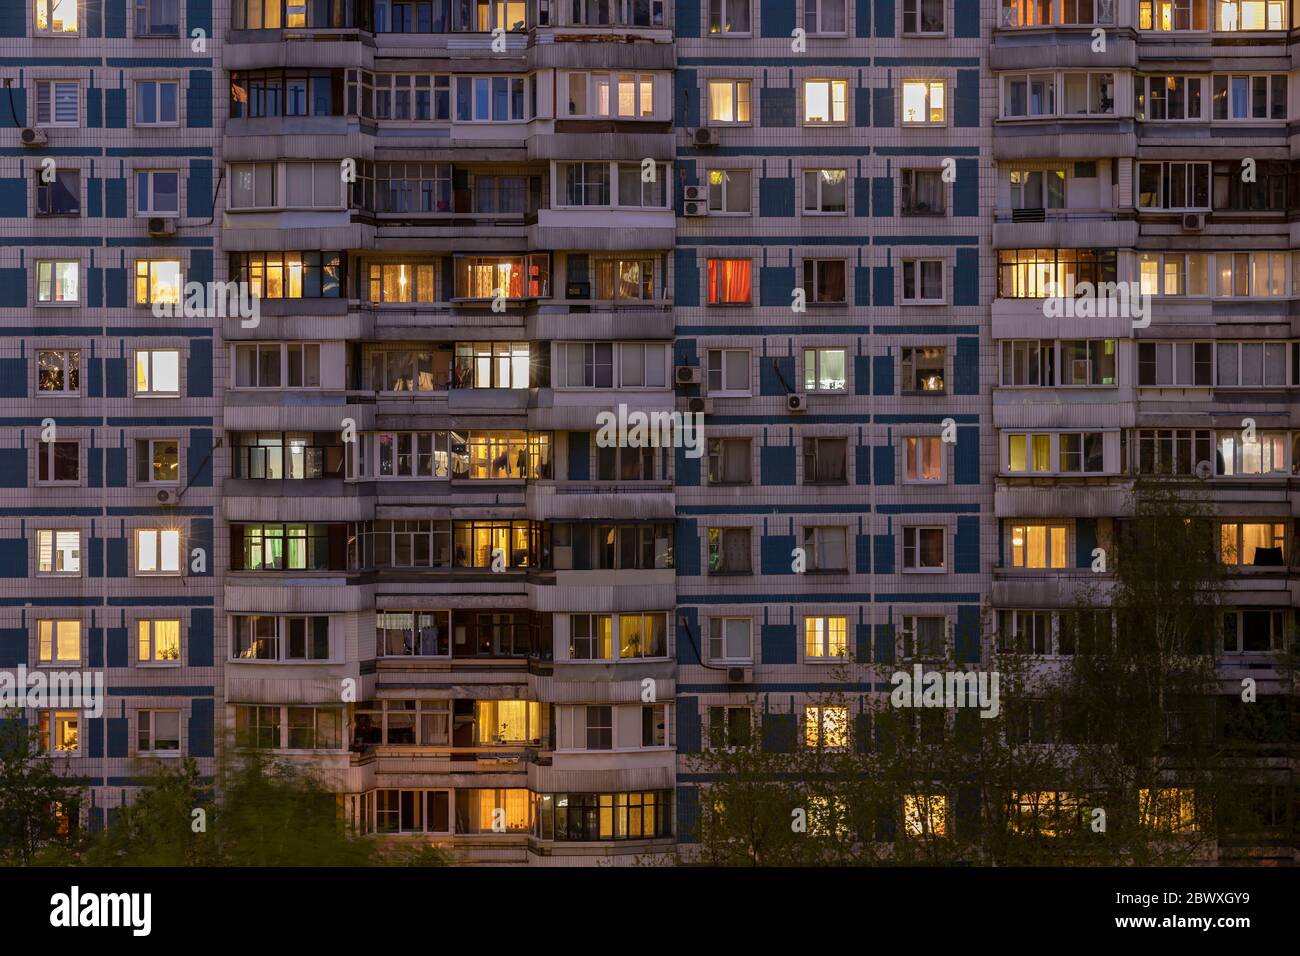 Fachada de un gran edificio residencial de varios pisos con muchas ventanas de iluminación en apartamentos y balcones? Vista nocturna. Moscú Rusia Foto de stock